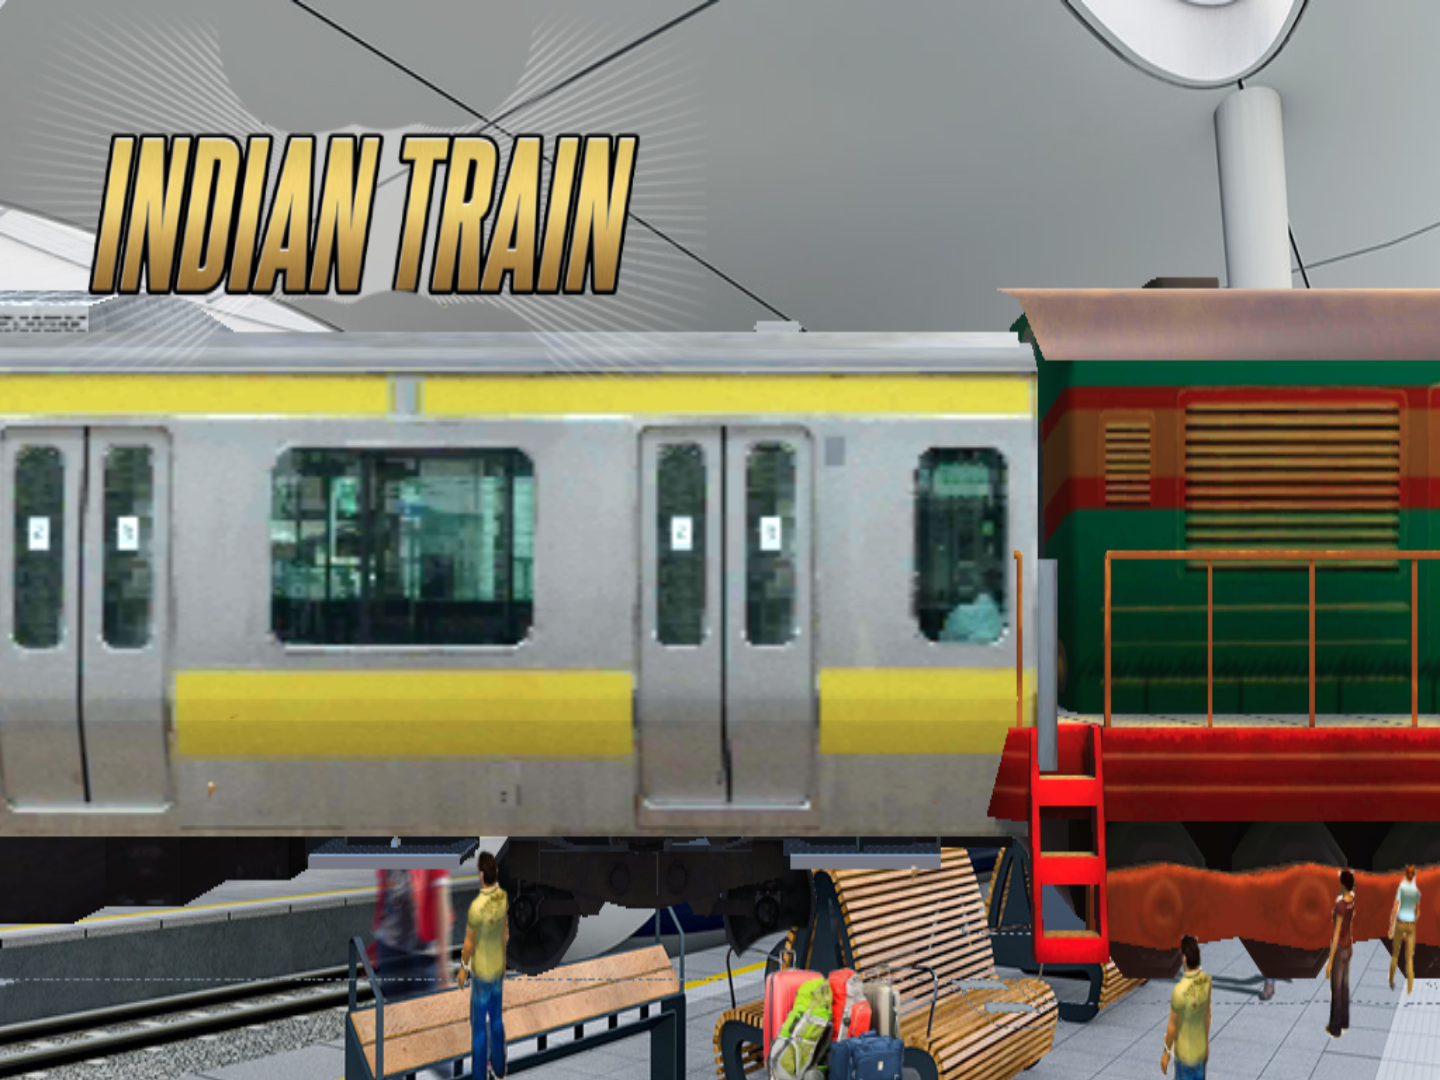 인도 기차 시뮬레이터 23遊戲截圖